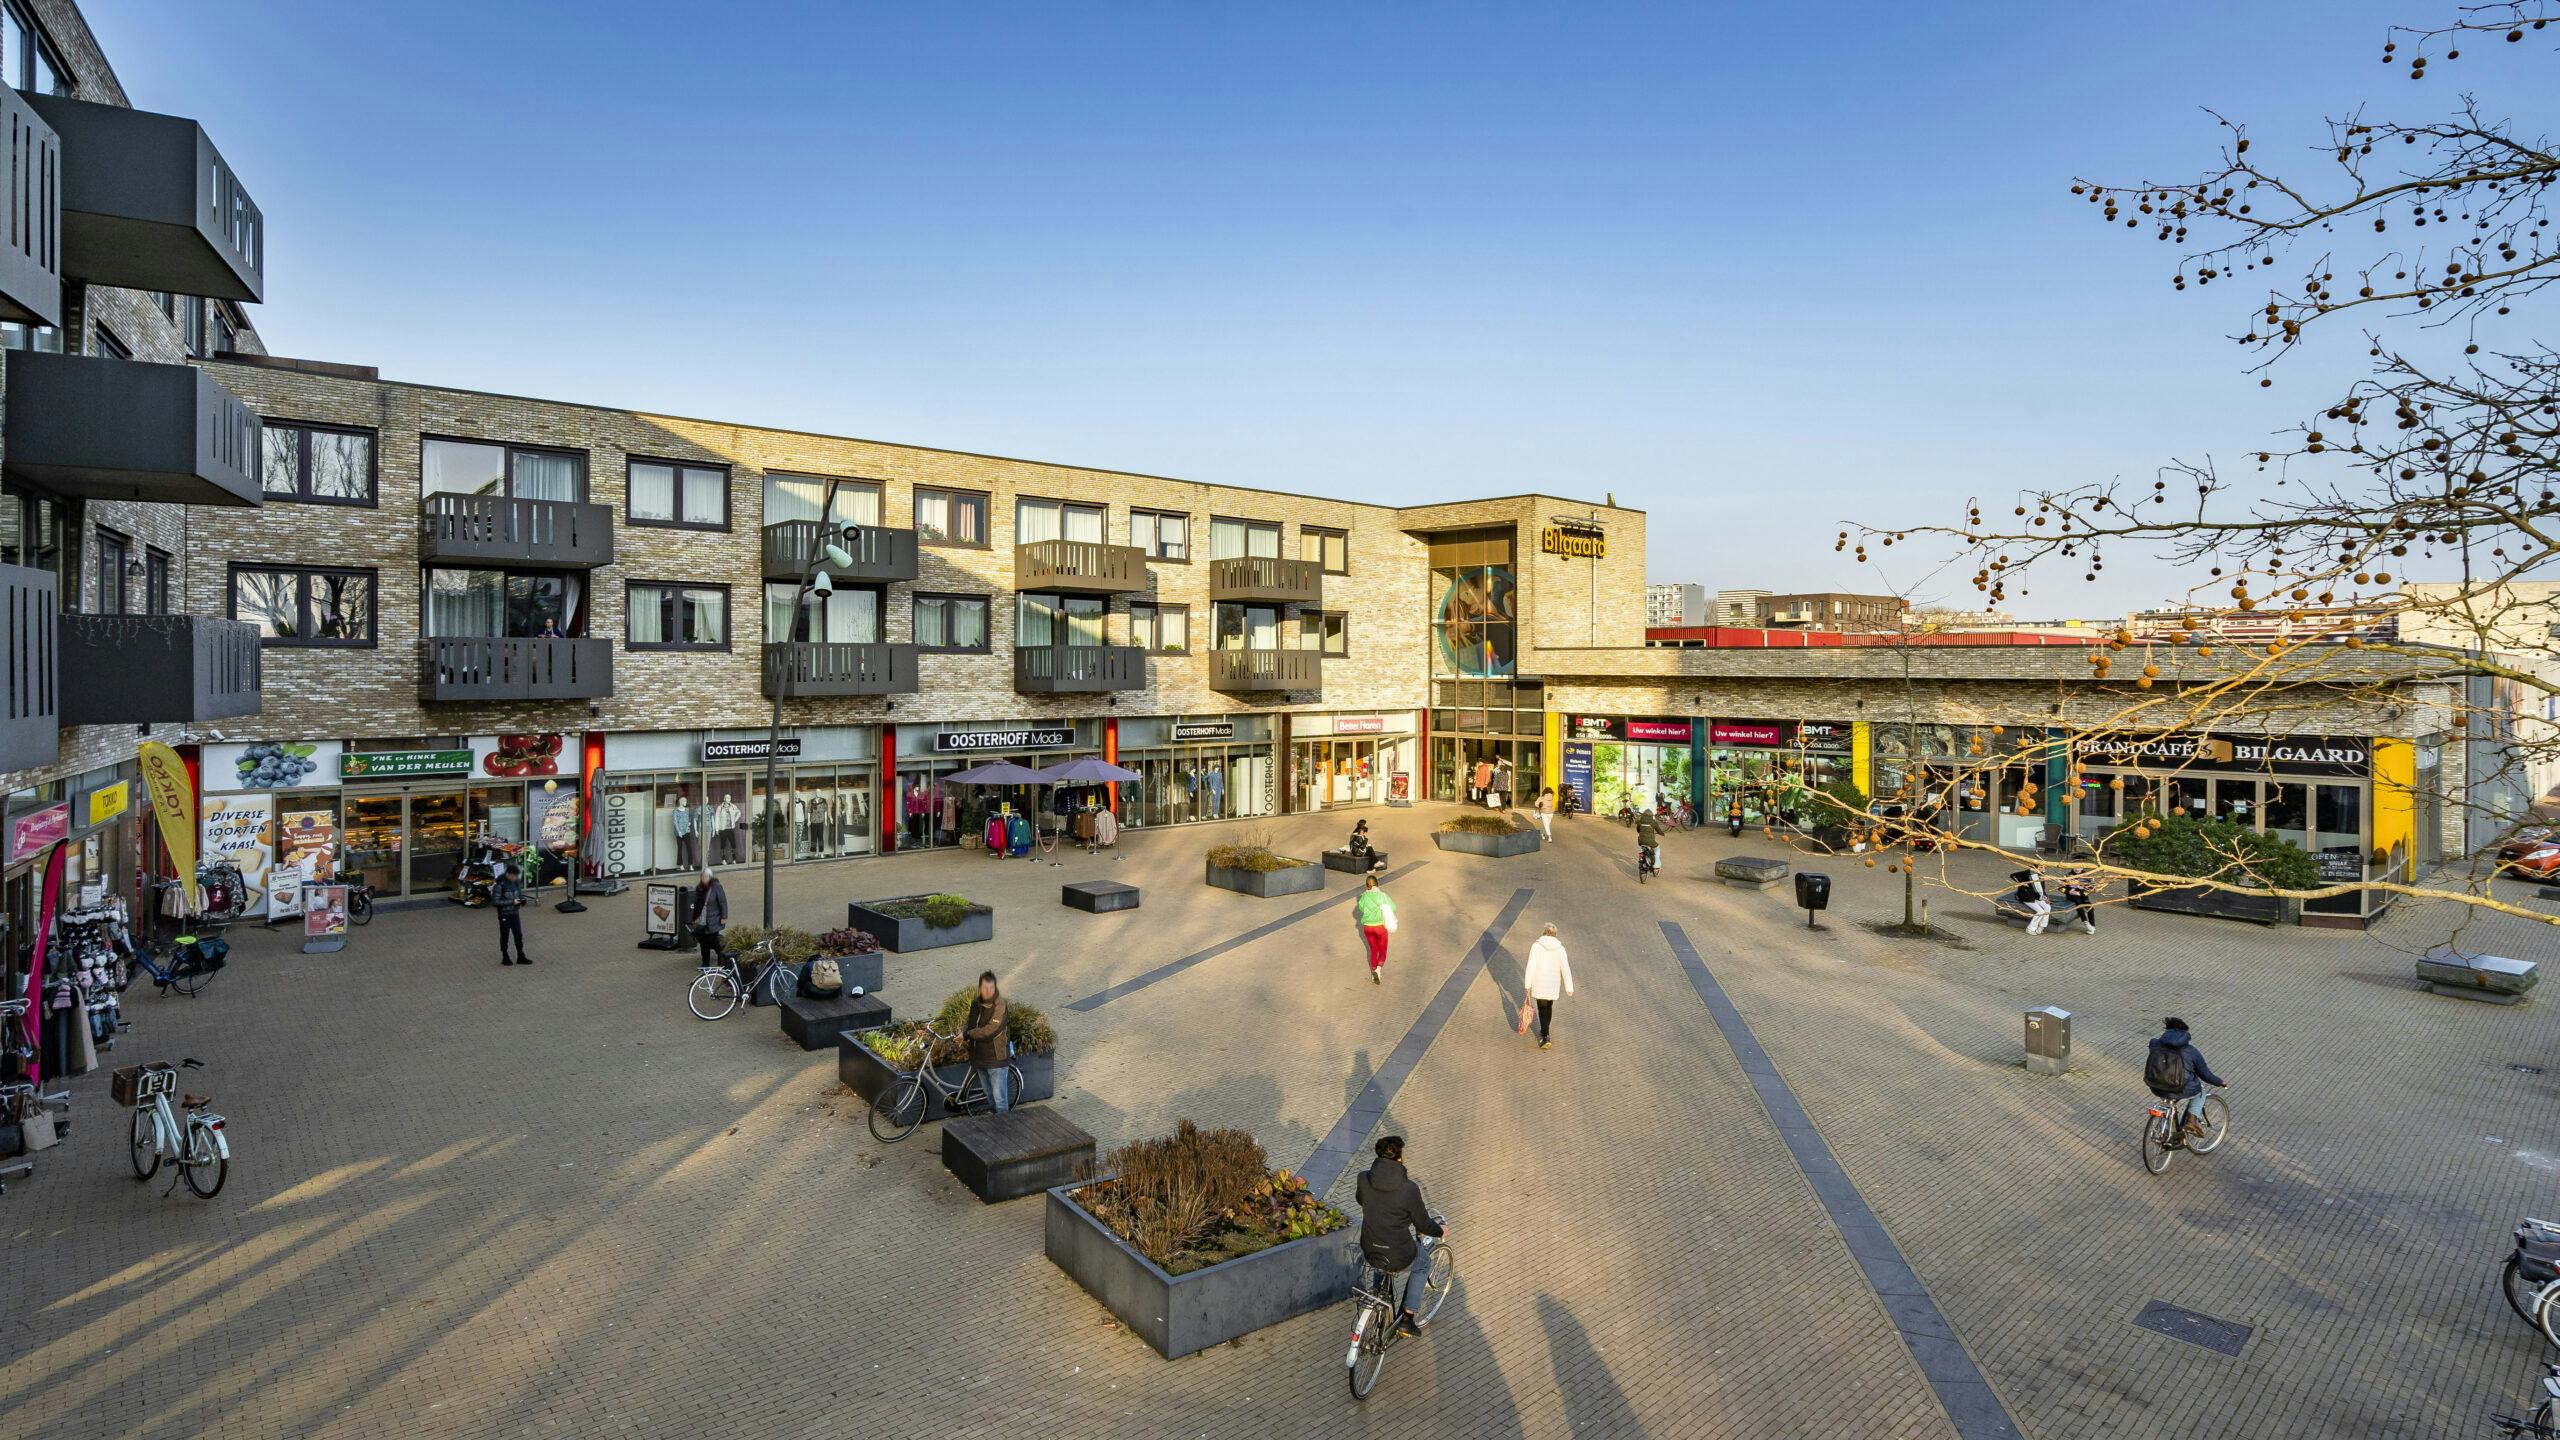 Yor Berkhout van CRMD Vastgoed kocht recent voor beleggingsfonds Meerdervoort voor 9,6 miljoen euro een deel van winkelcentrum Bilgaard in Leeuwarden. ‘Ik ben optimistisch over de winkelmarkt.’ 